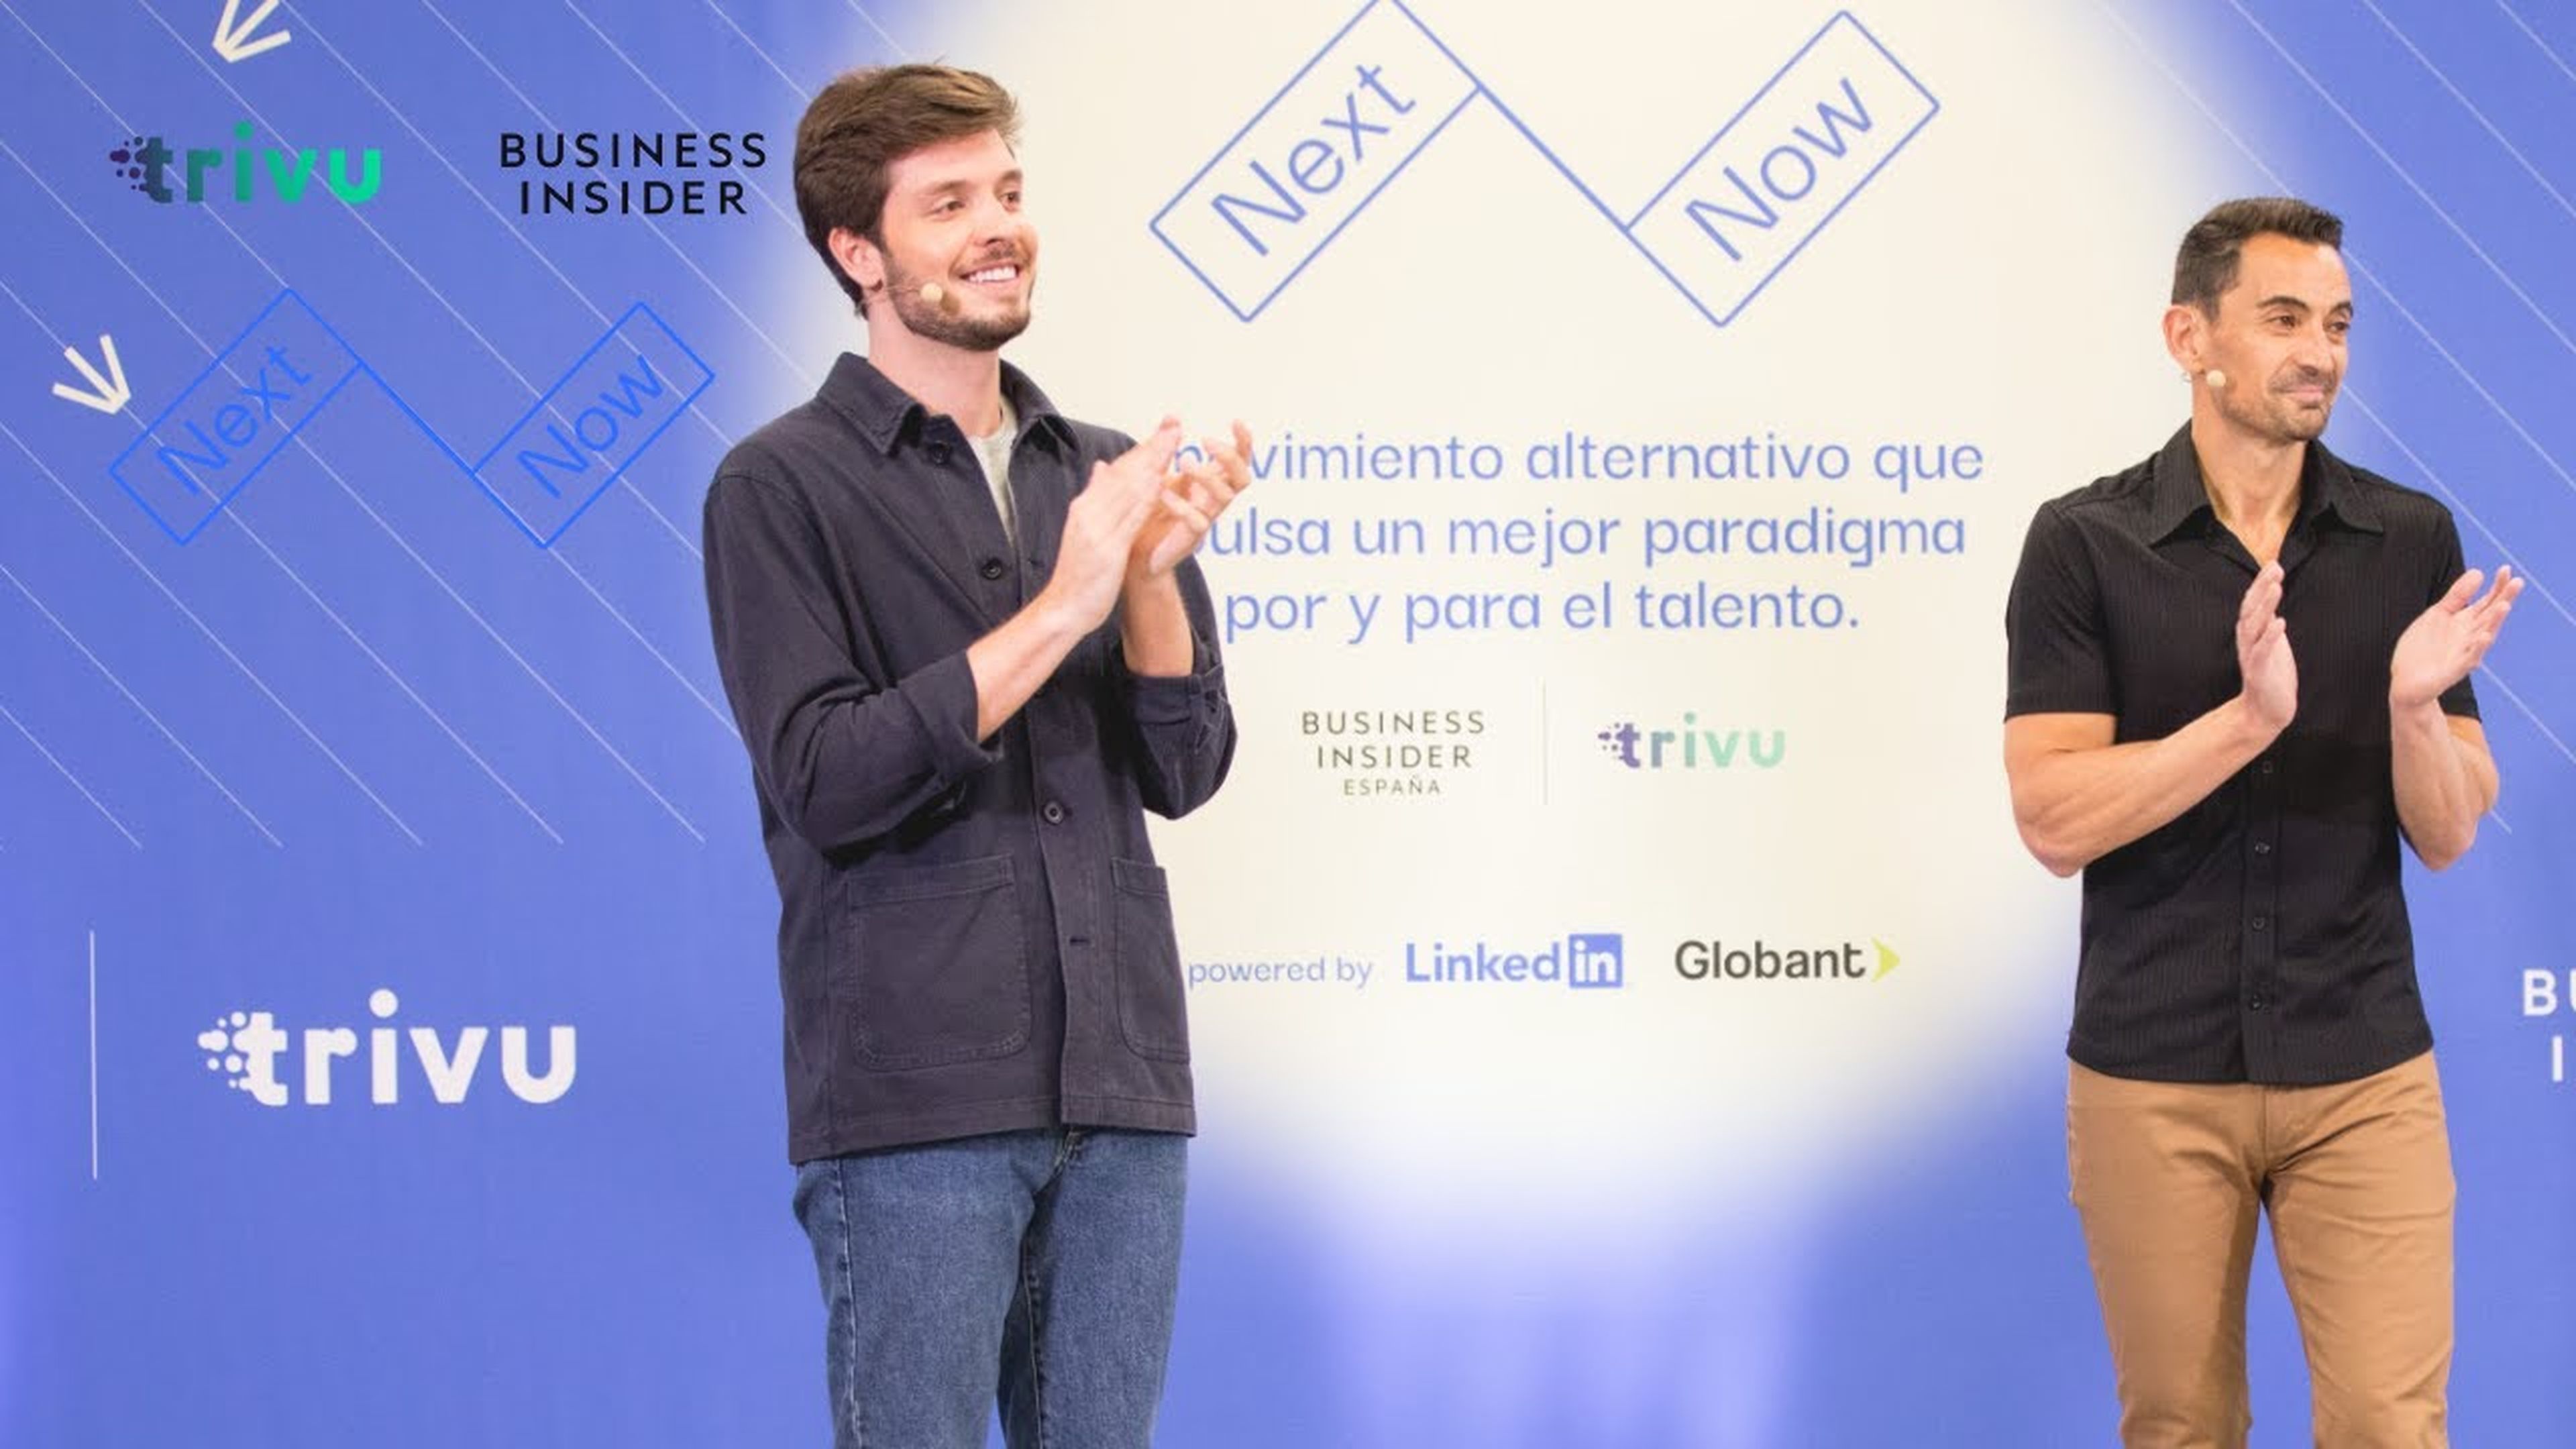 Nextnow: el futuro del trabajo según Business Insider España y Trivu